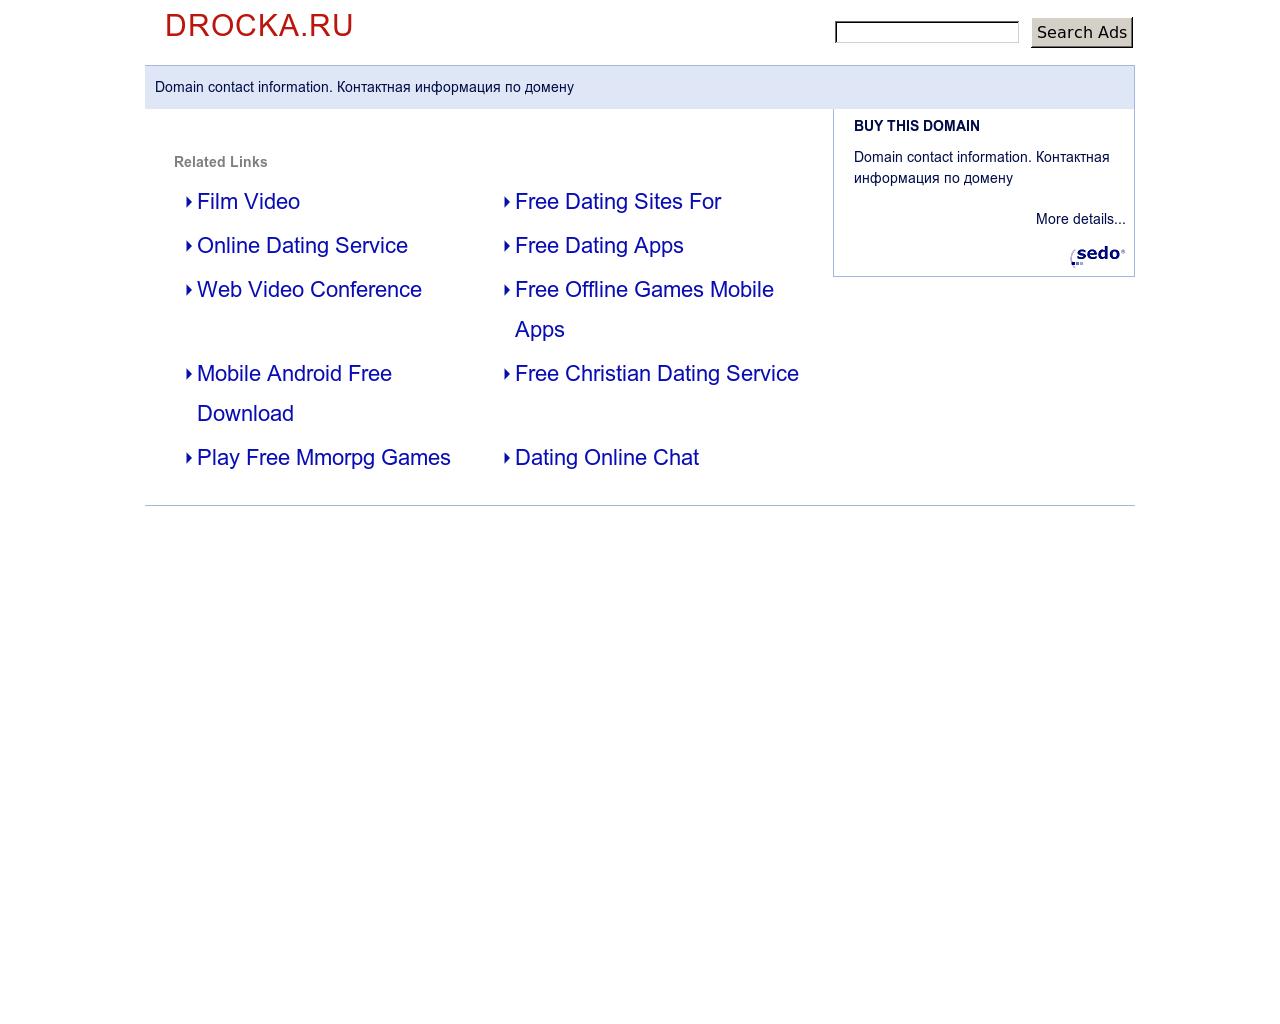 Изображение сайта drocka.ru в разрешении 1280x1024